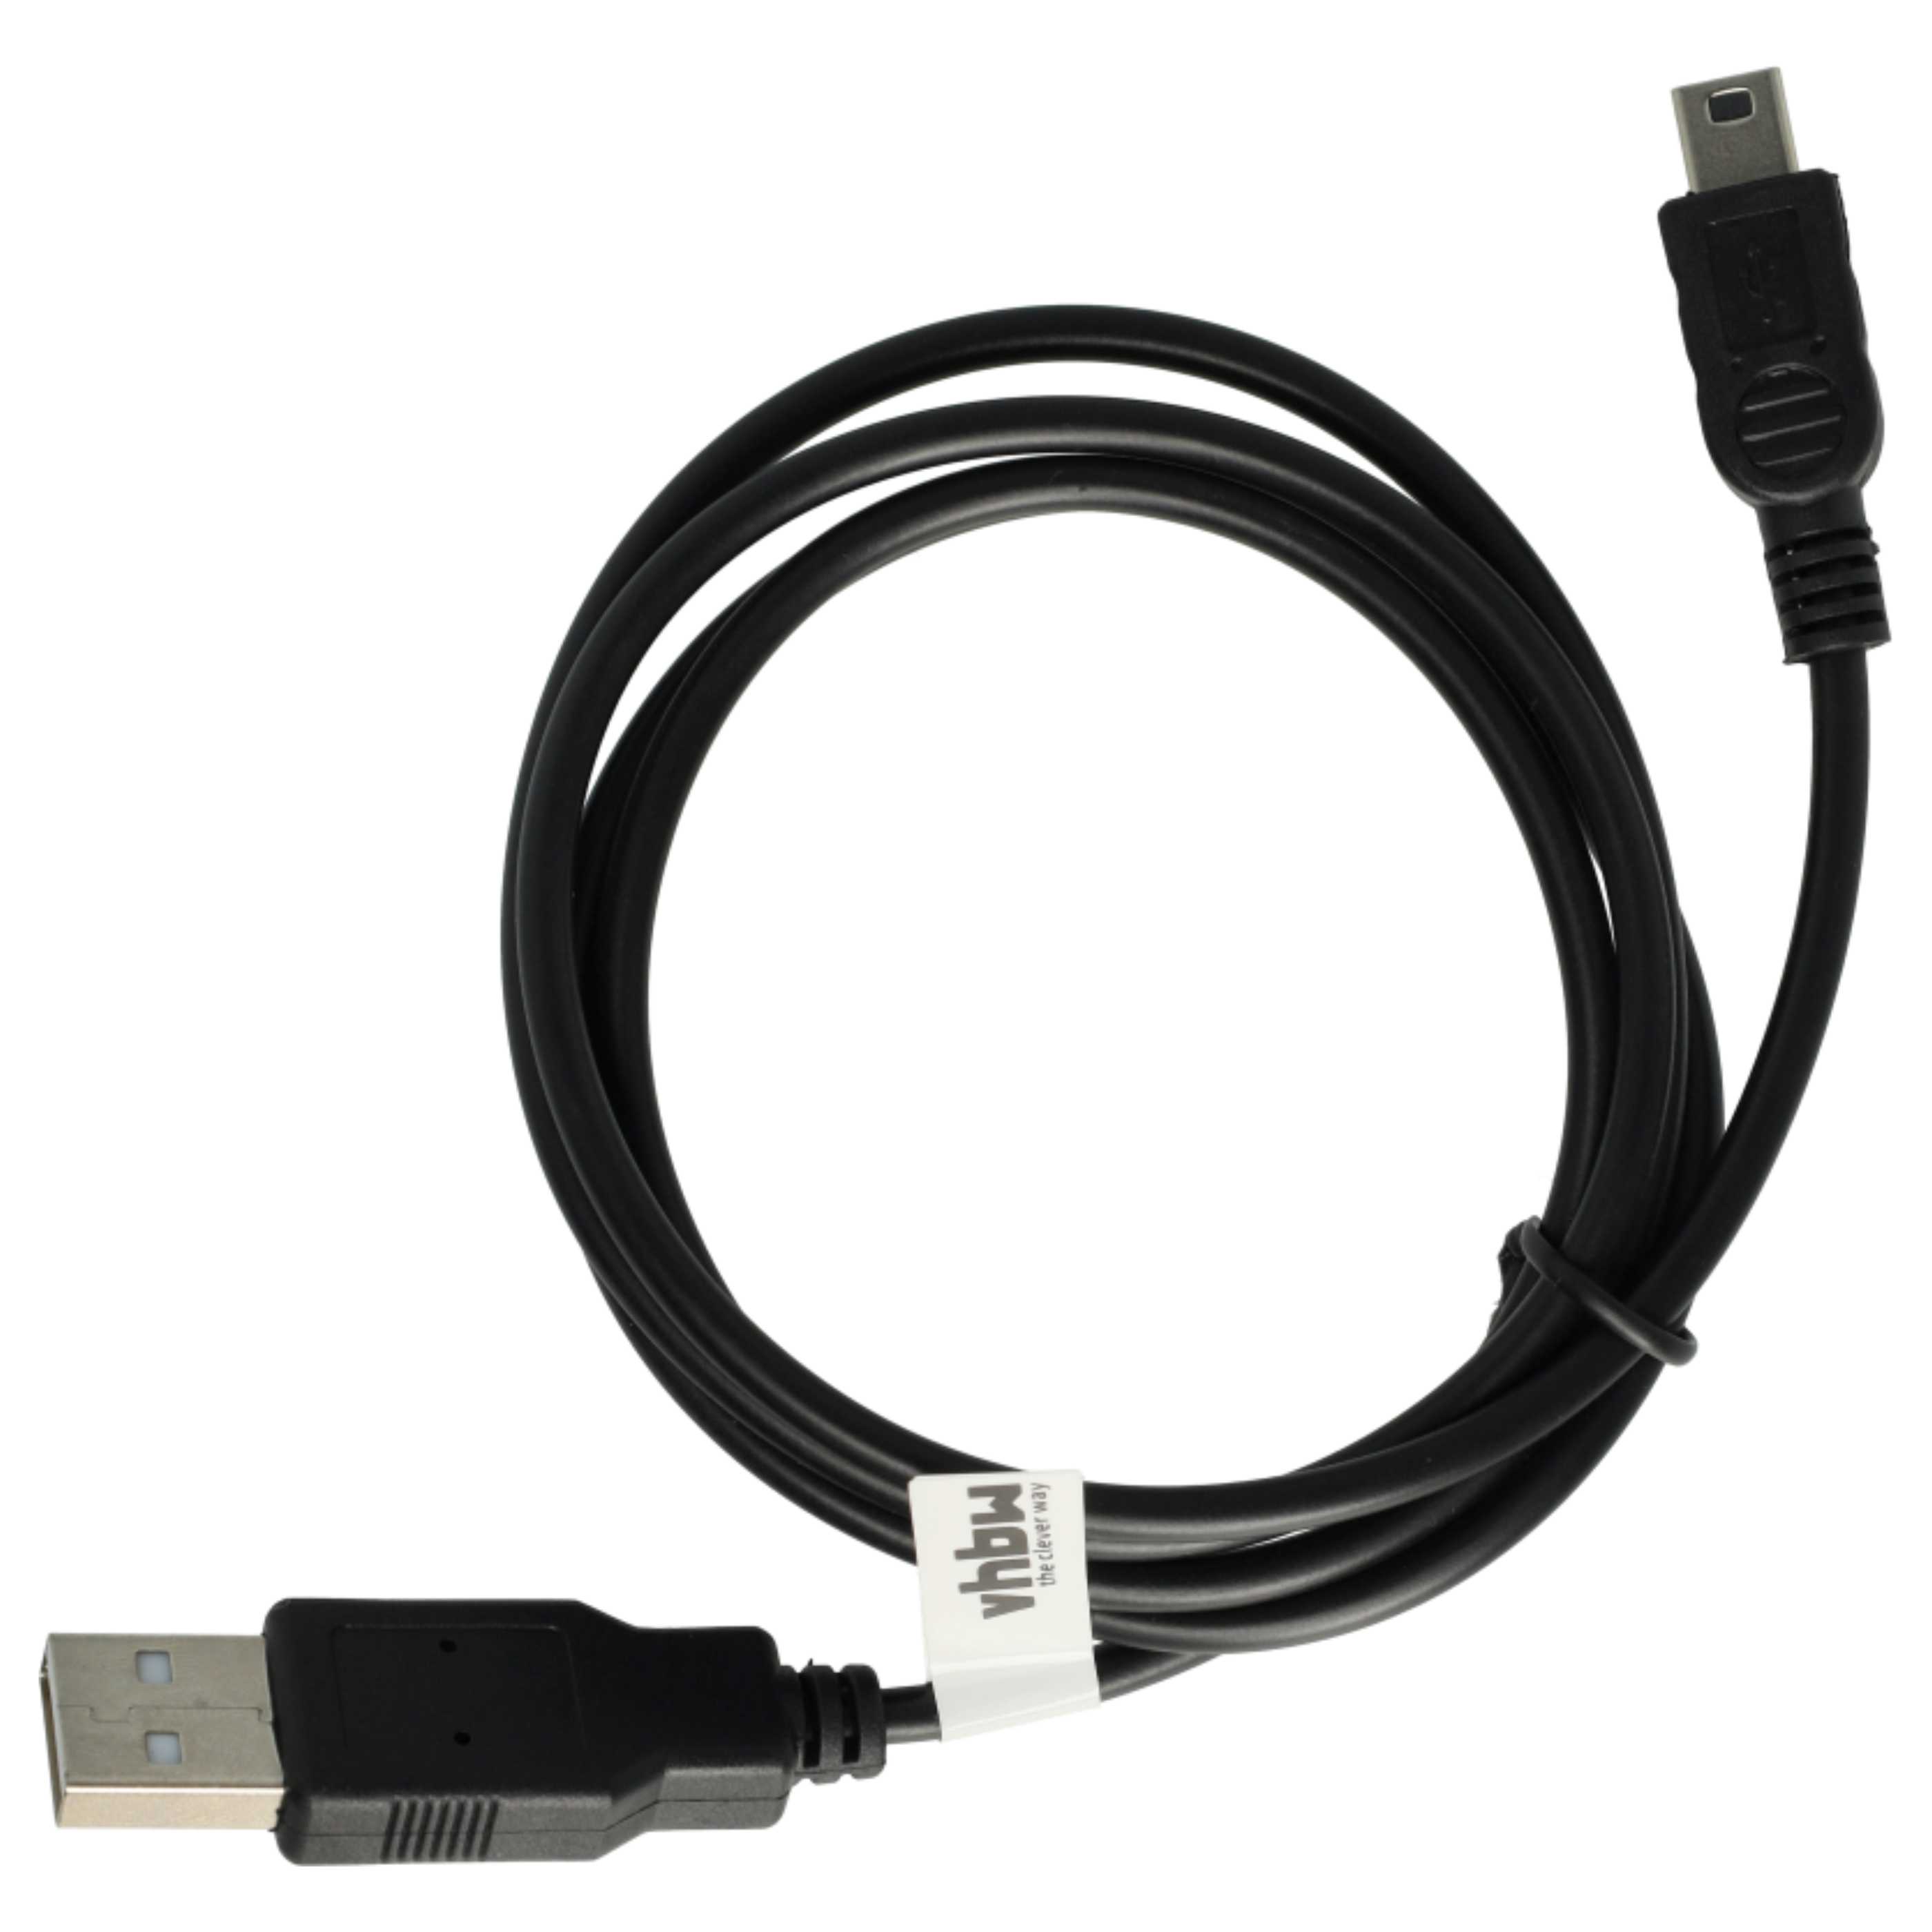 Kabel USB do transmisji danych do komórki Nokia 3109 classic - kabel ładujący 2w1 - 100 cm